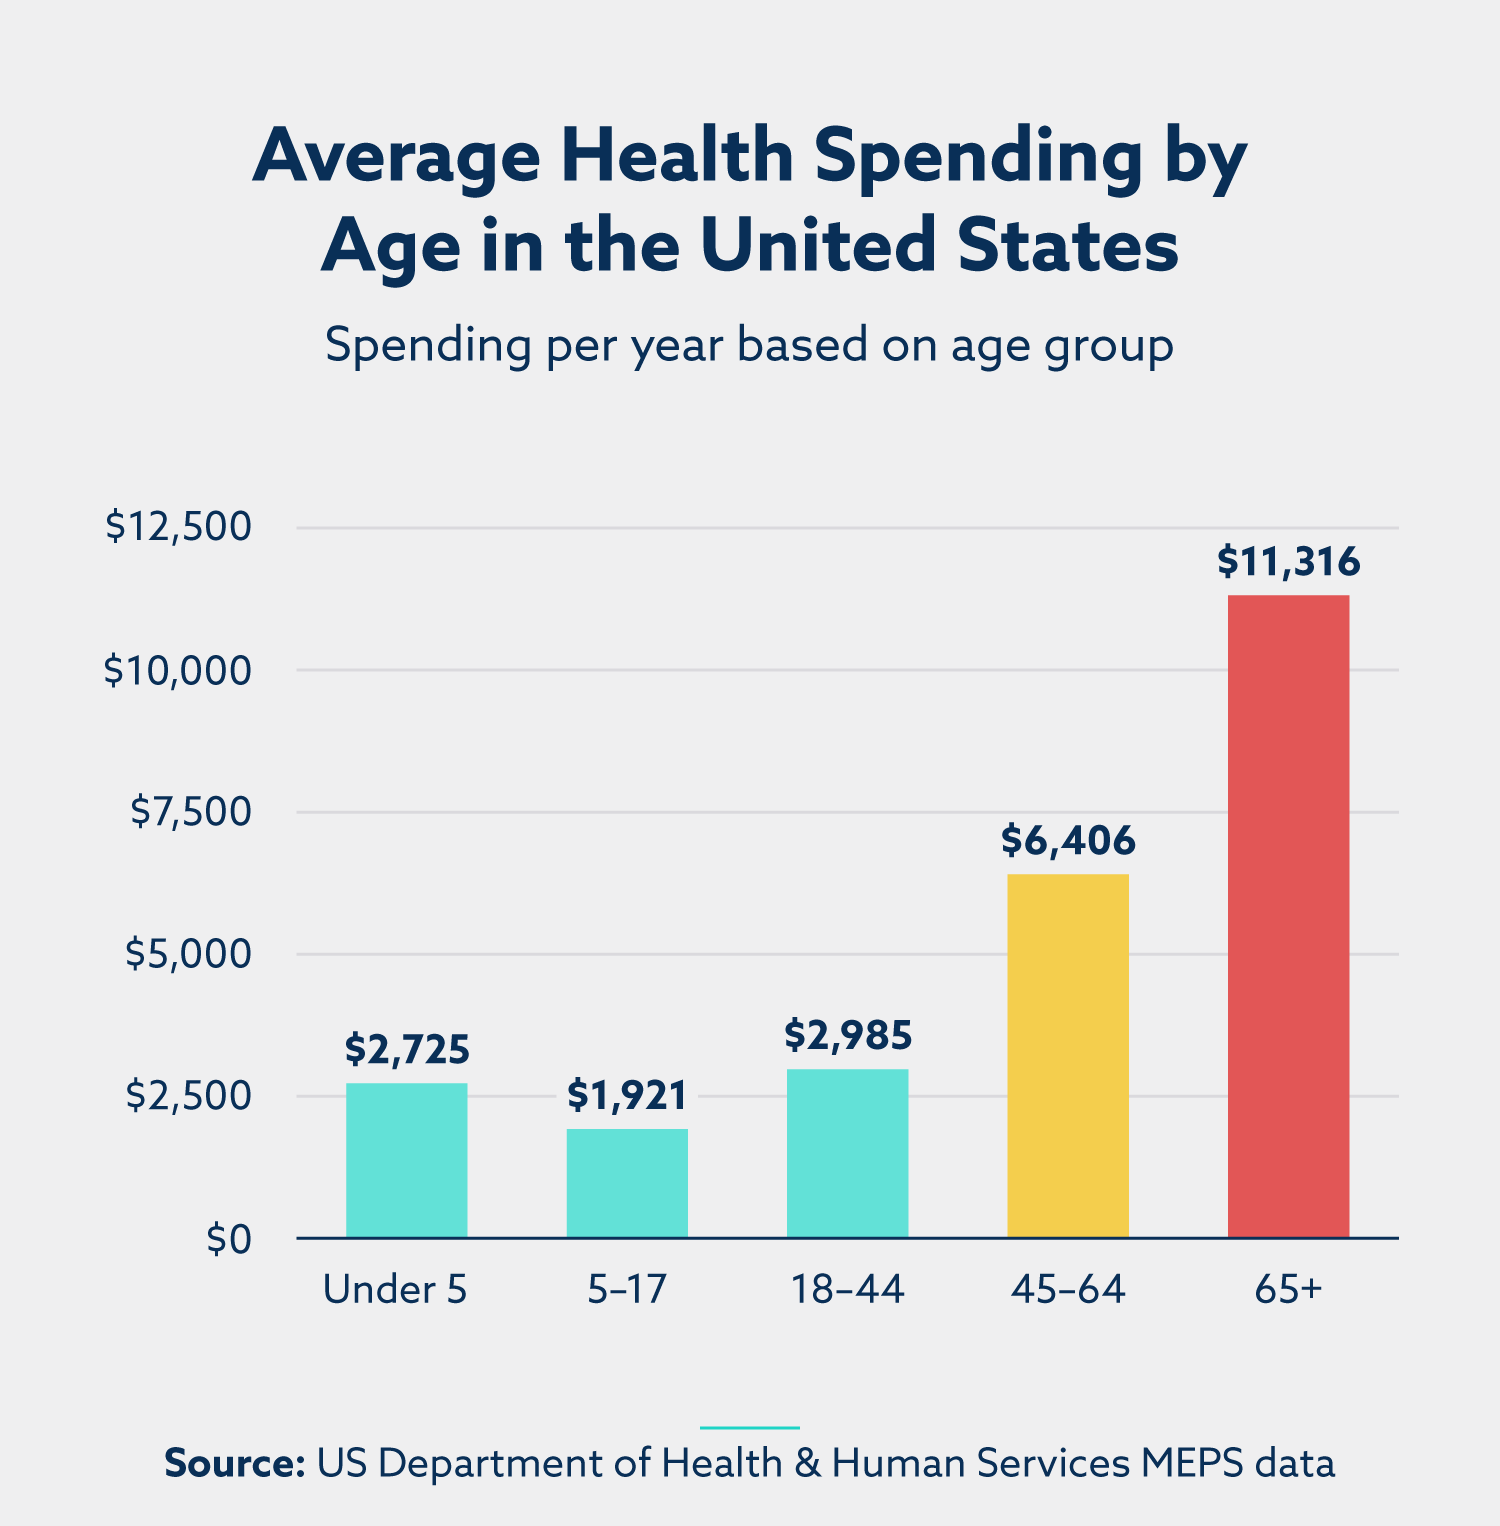 gráfico de barras del gasto medio en salud por edad en los estados unidos